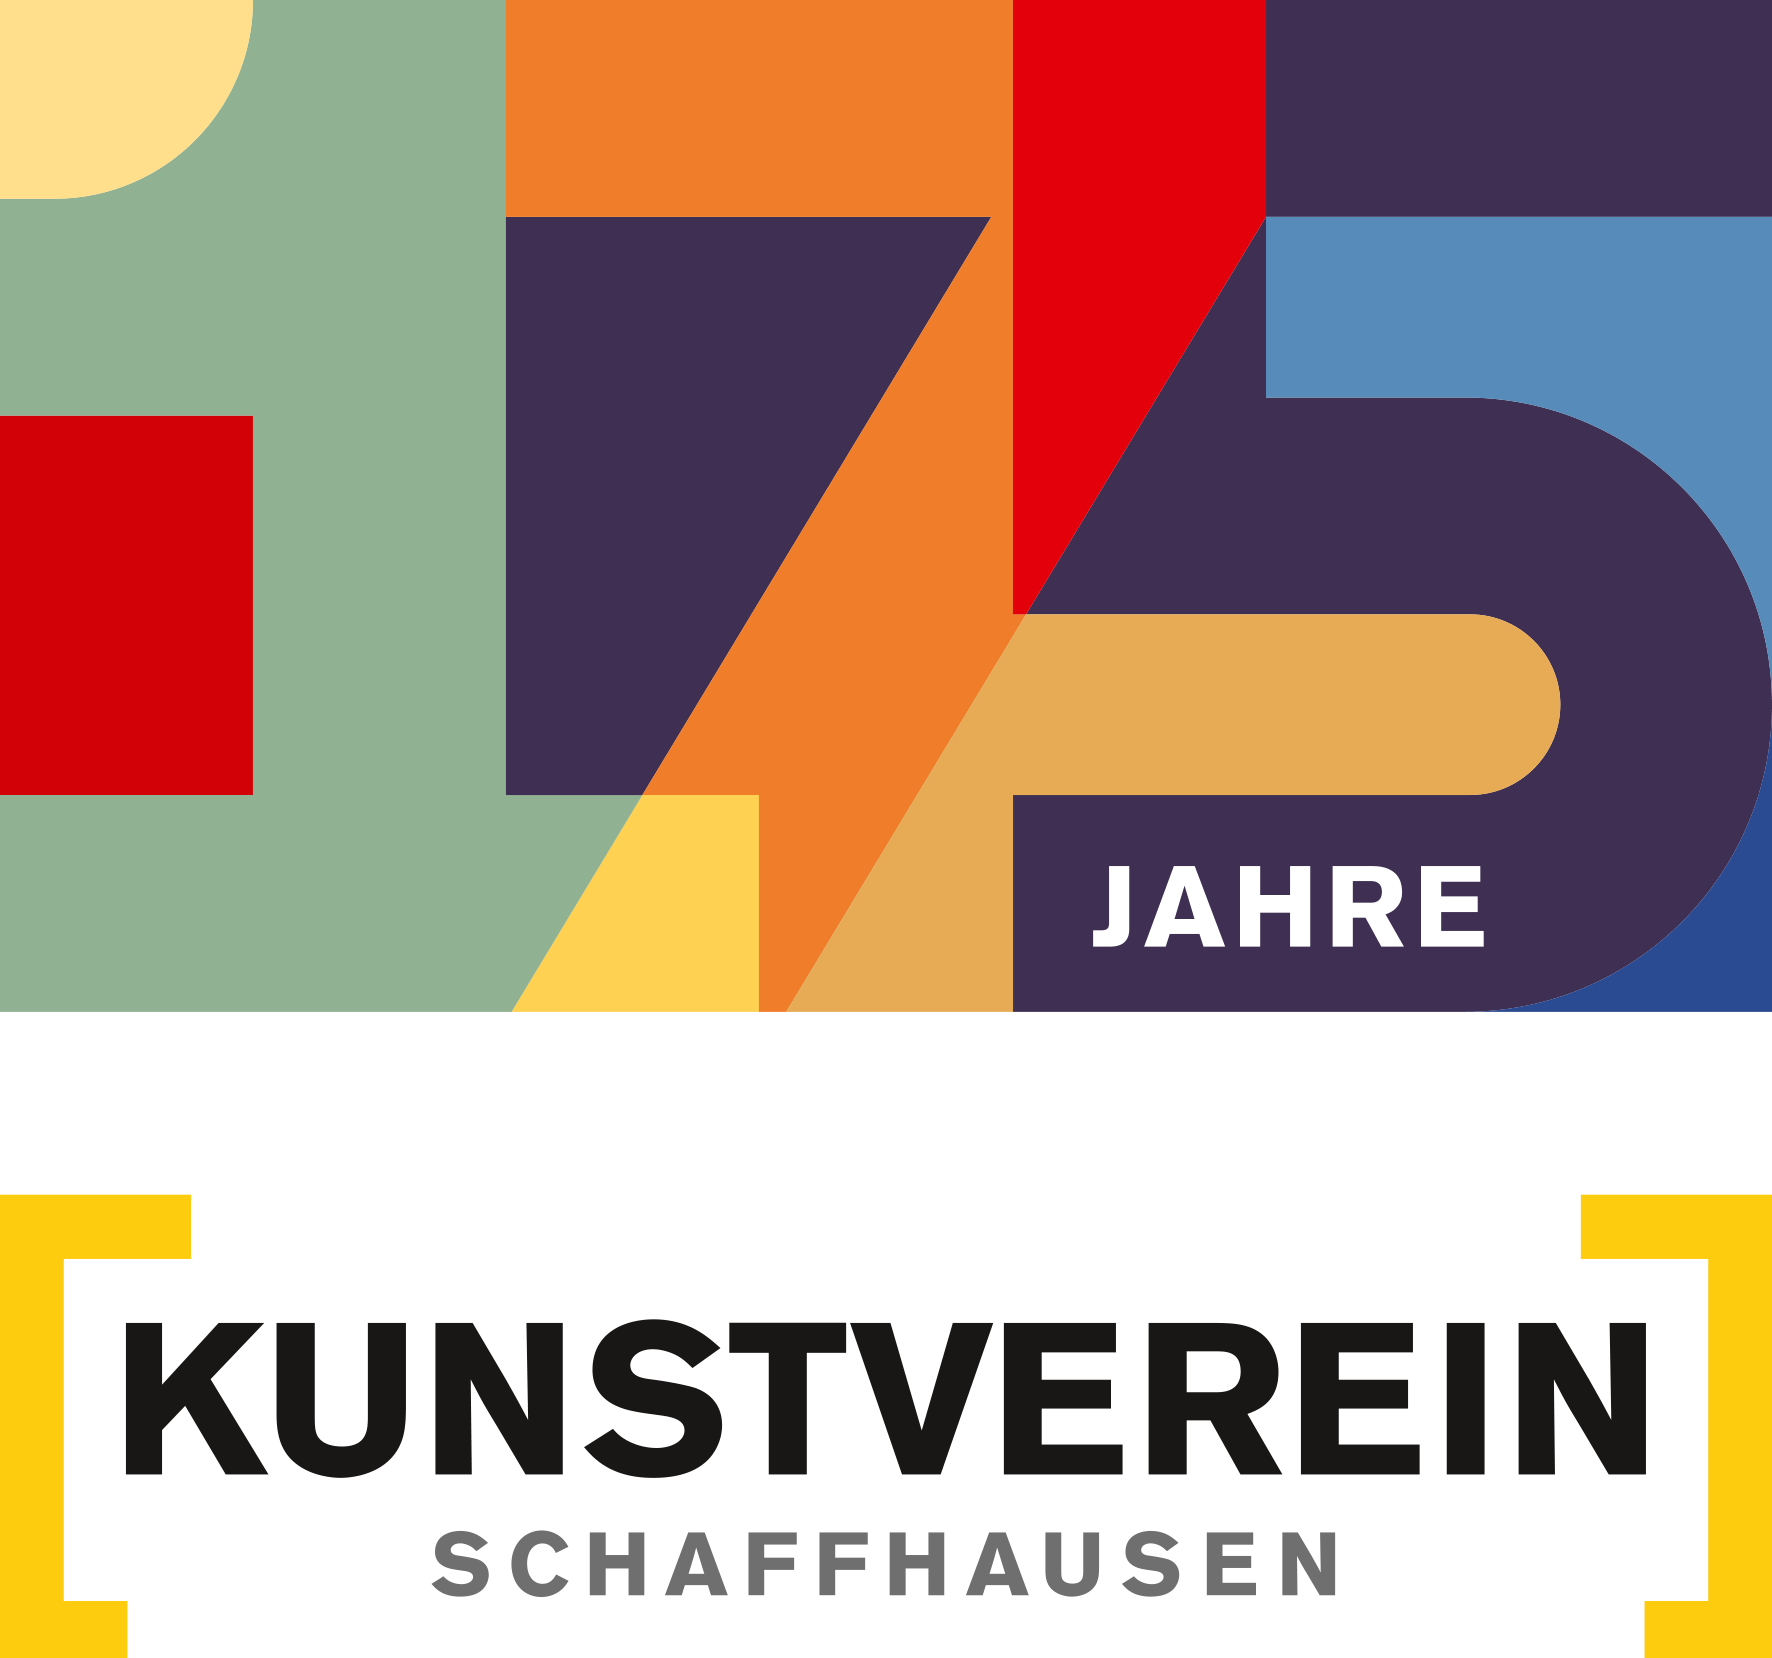 175 Jahre Kunstverein Schaffhausen - Logo